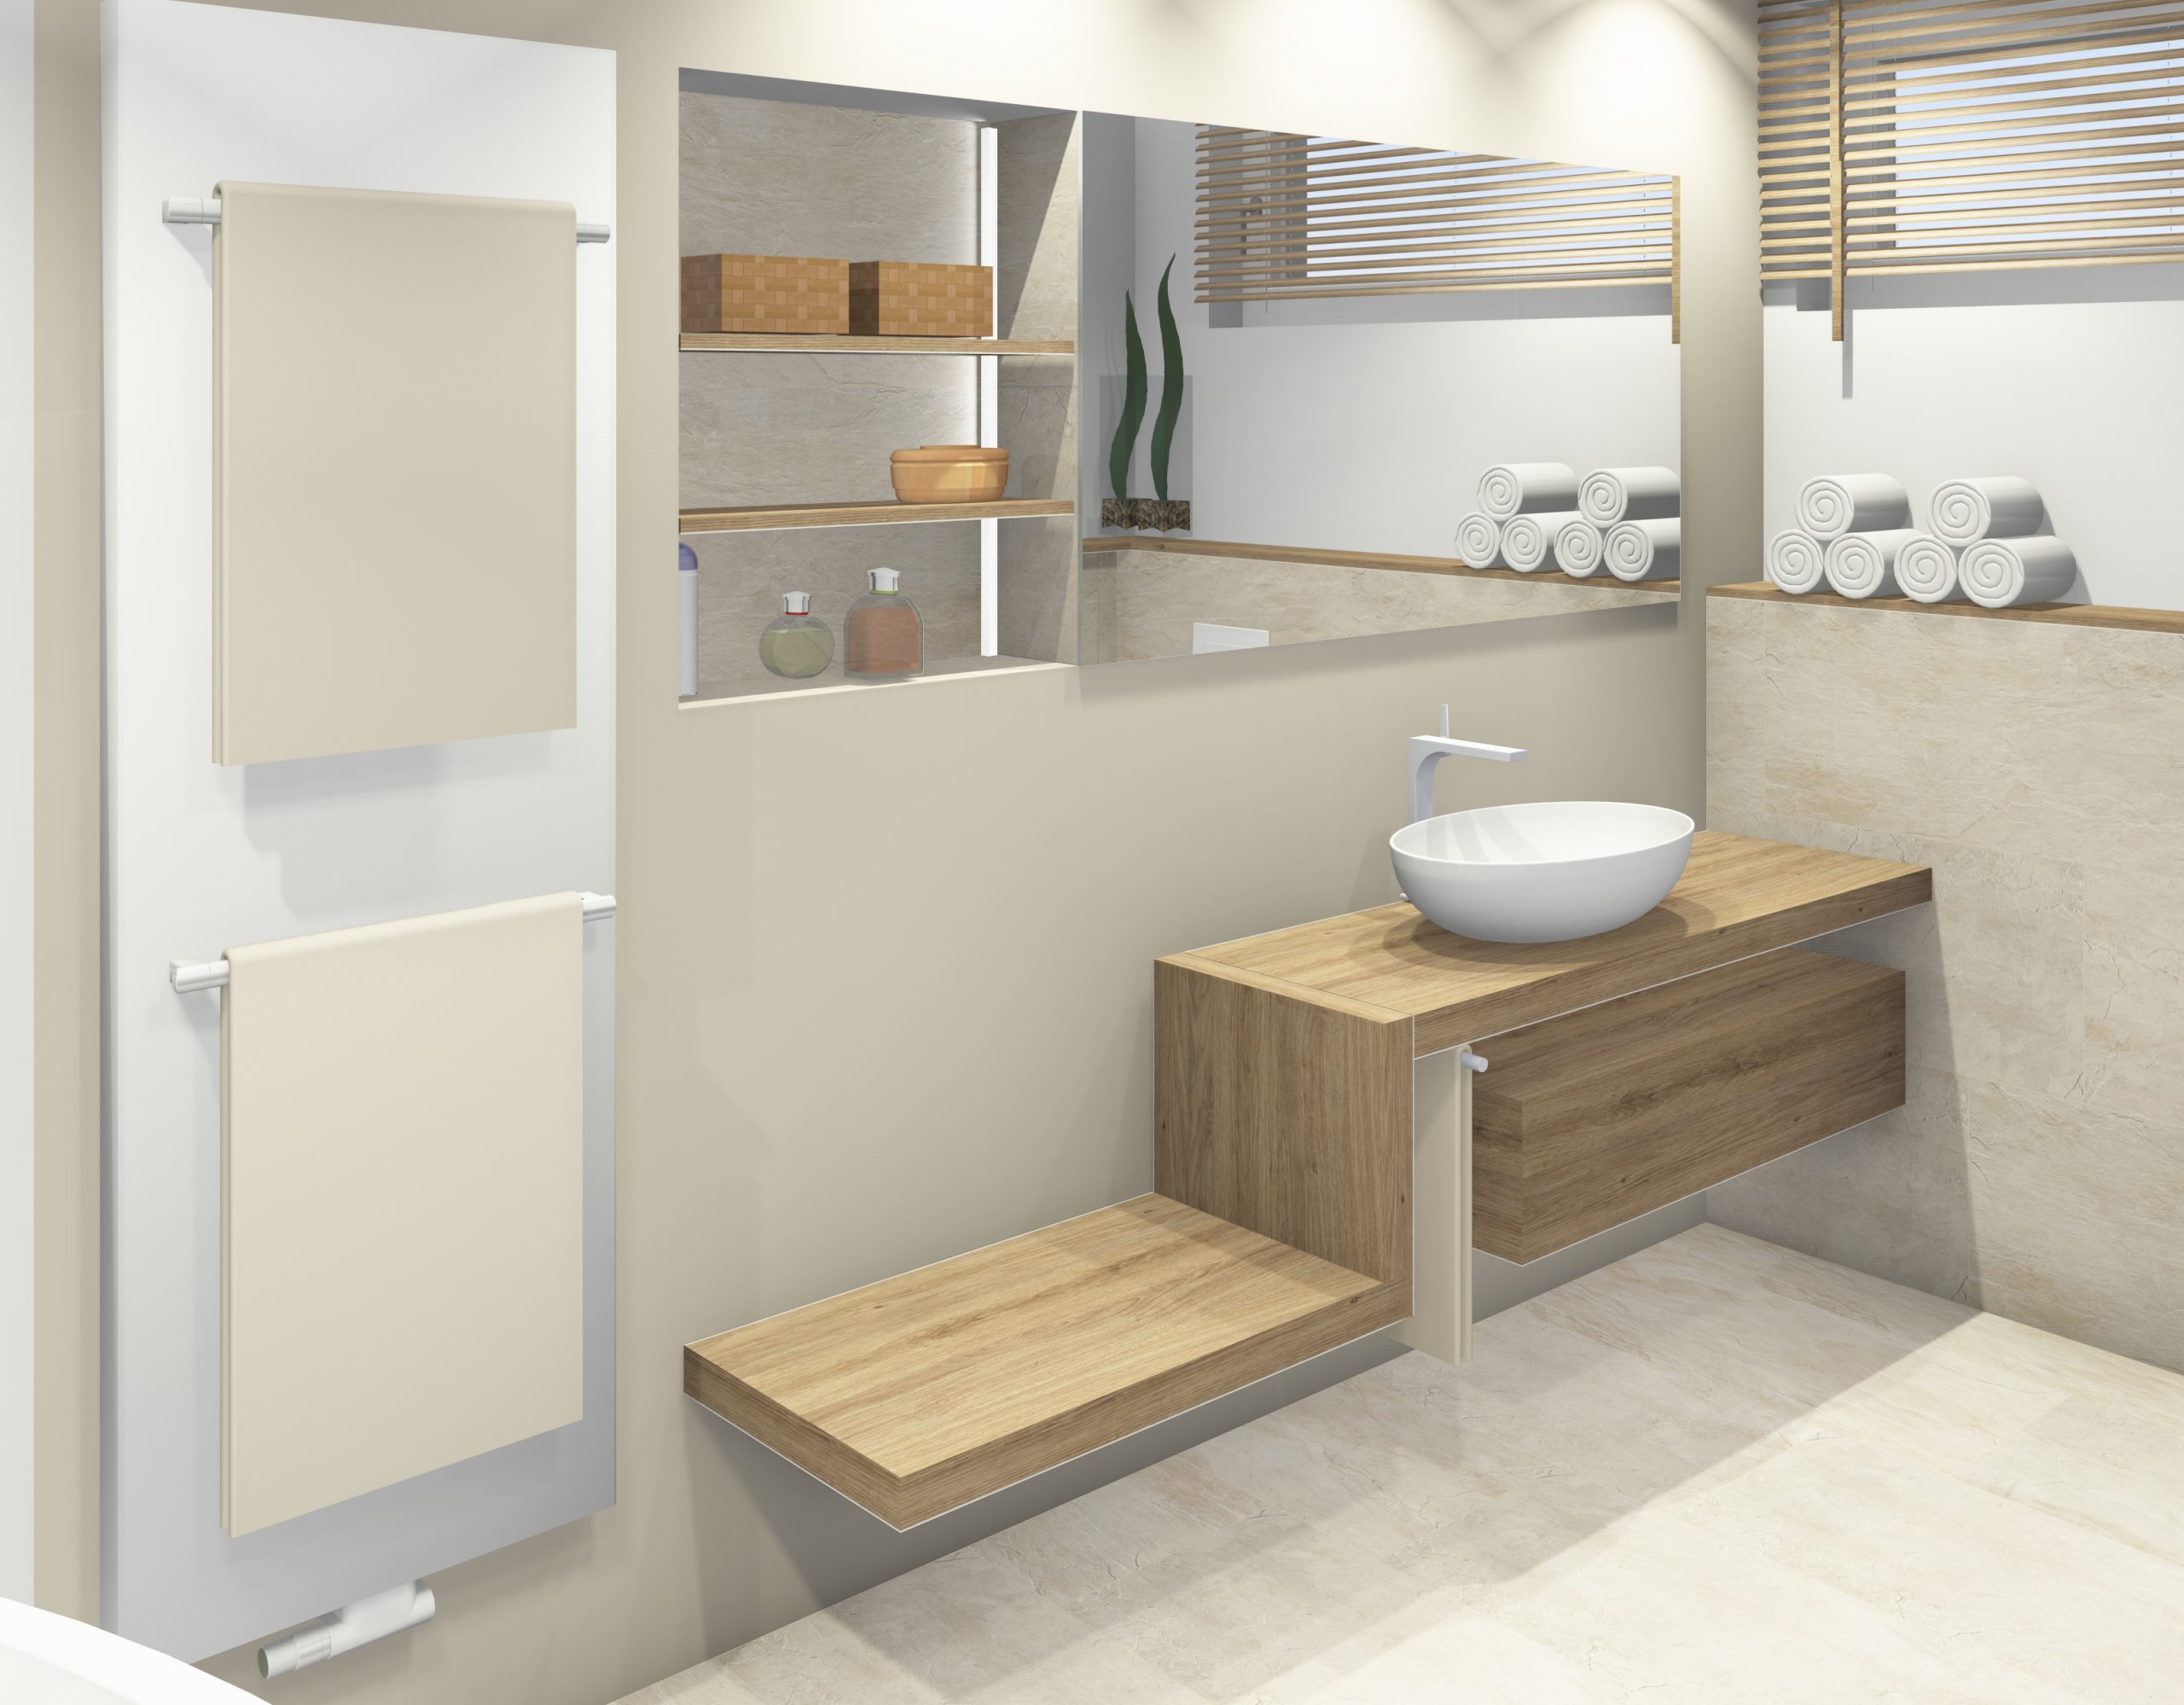 Waschtischanlage mit Sitz und Ablage, Einbauspiegelschrank, designconcepte